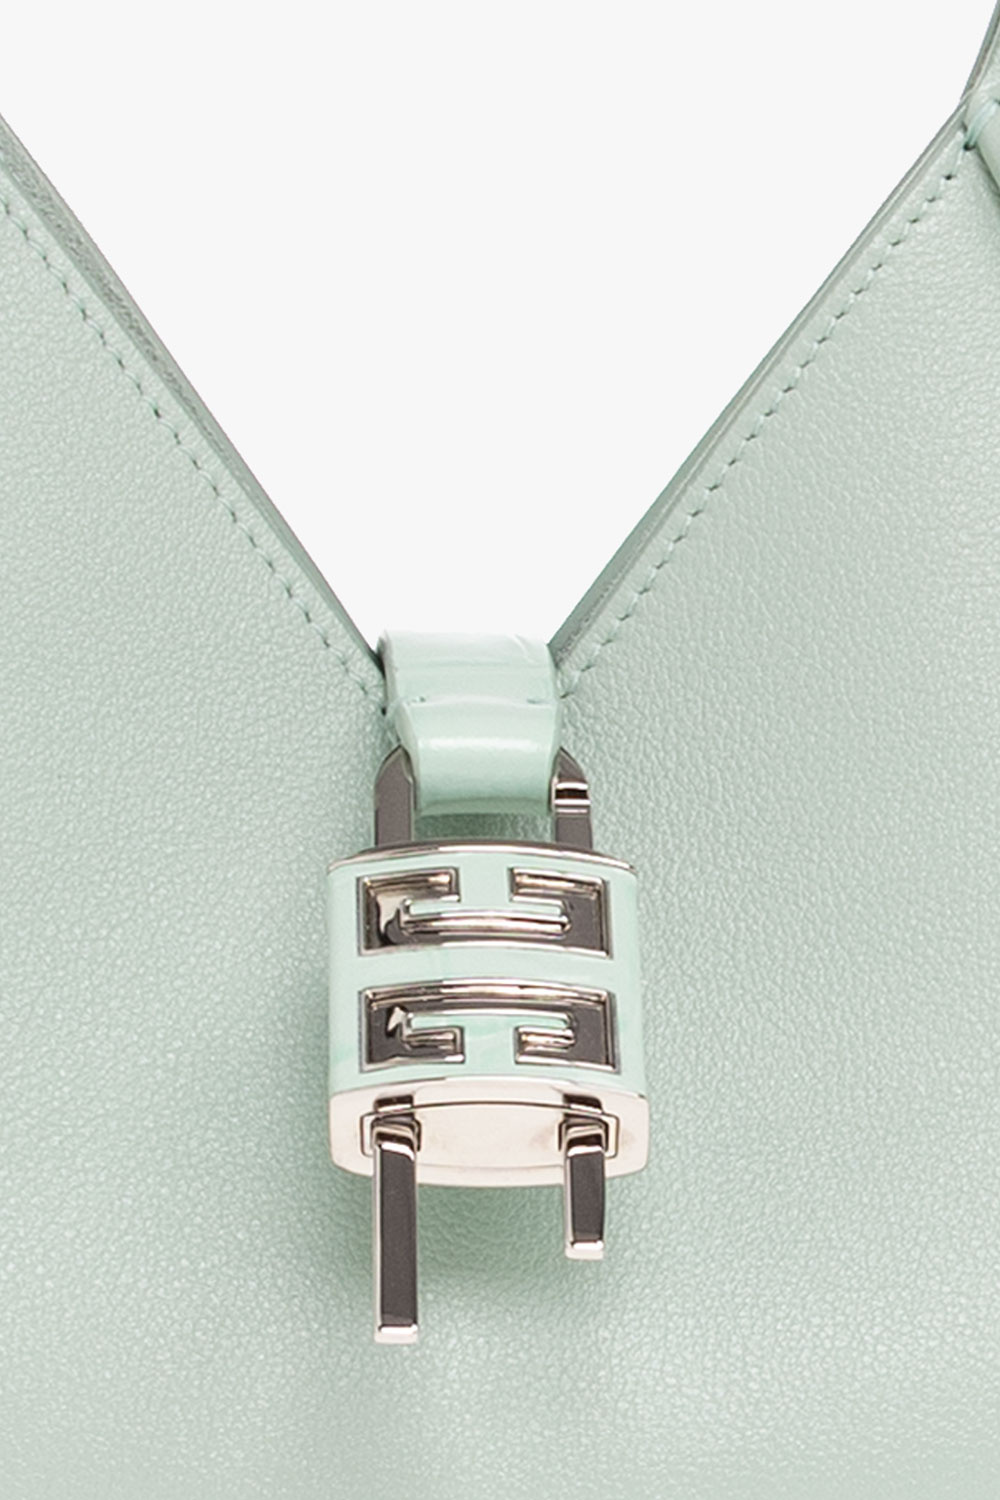 Givenchy ‘G-Hobo Mini’ handbag